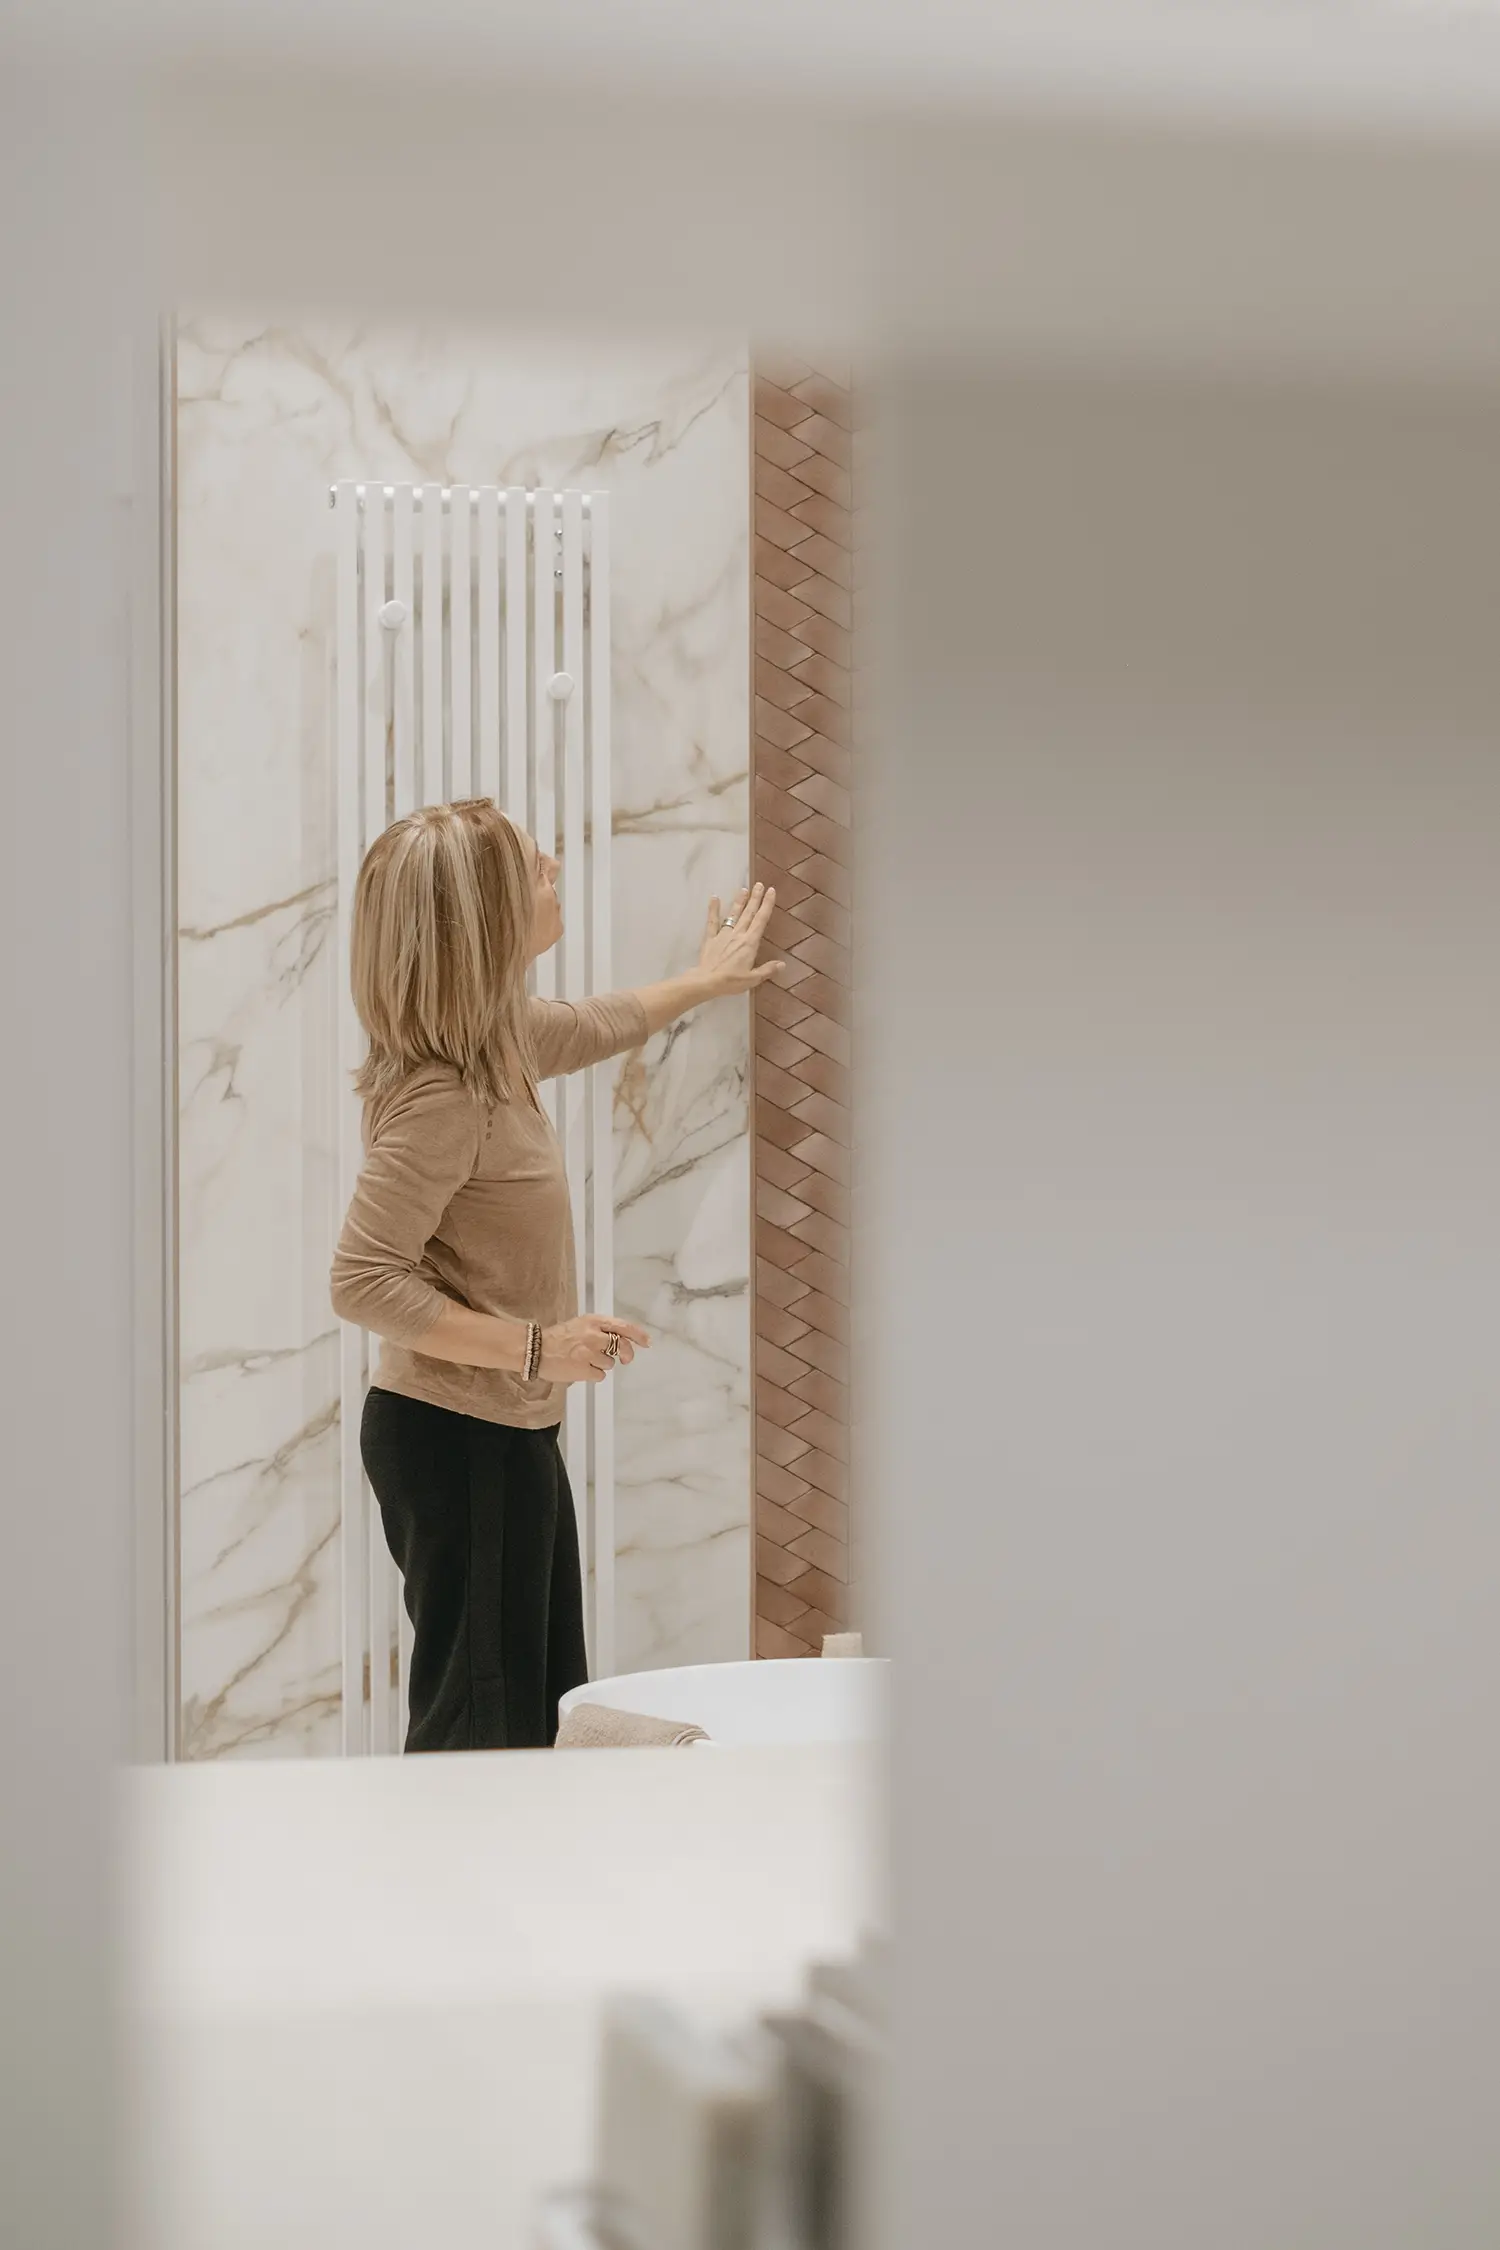 L'architecte d'intérieur Stefania Luraghi vérifie la pose d'un revêtement mural en céramique, à l'intérieur d'un chantier.